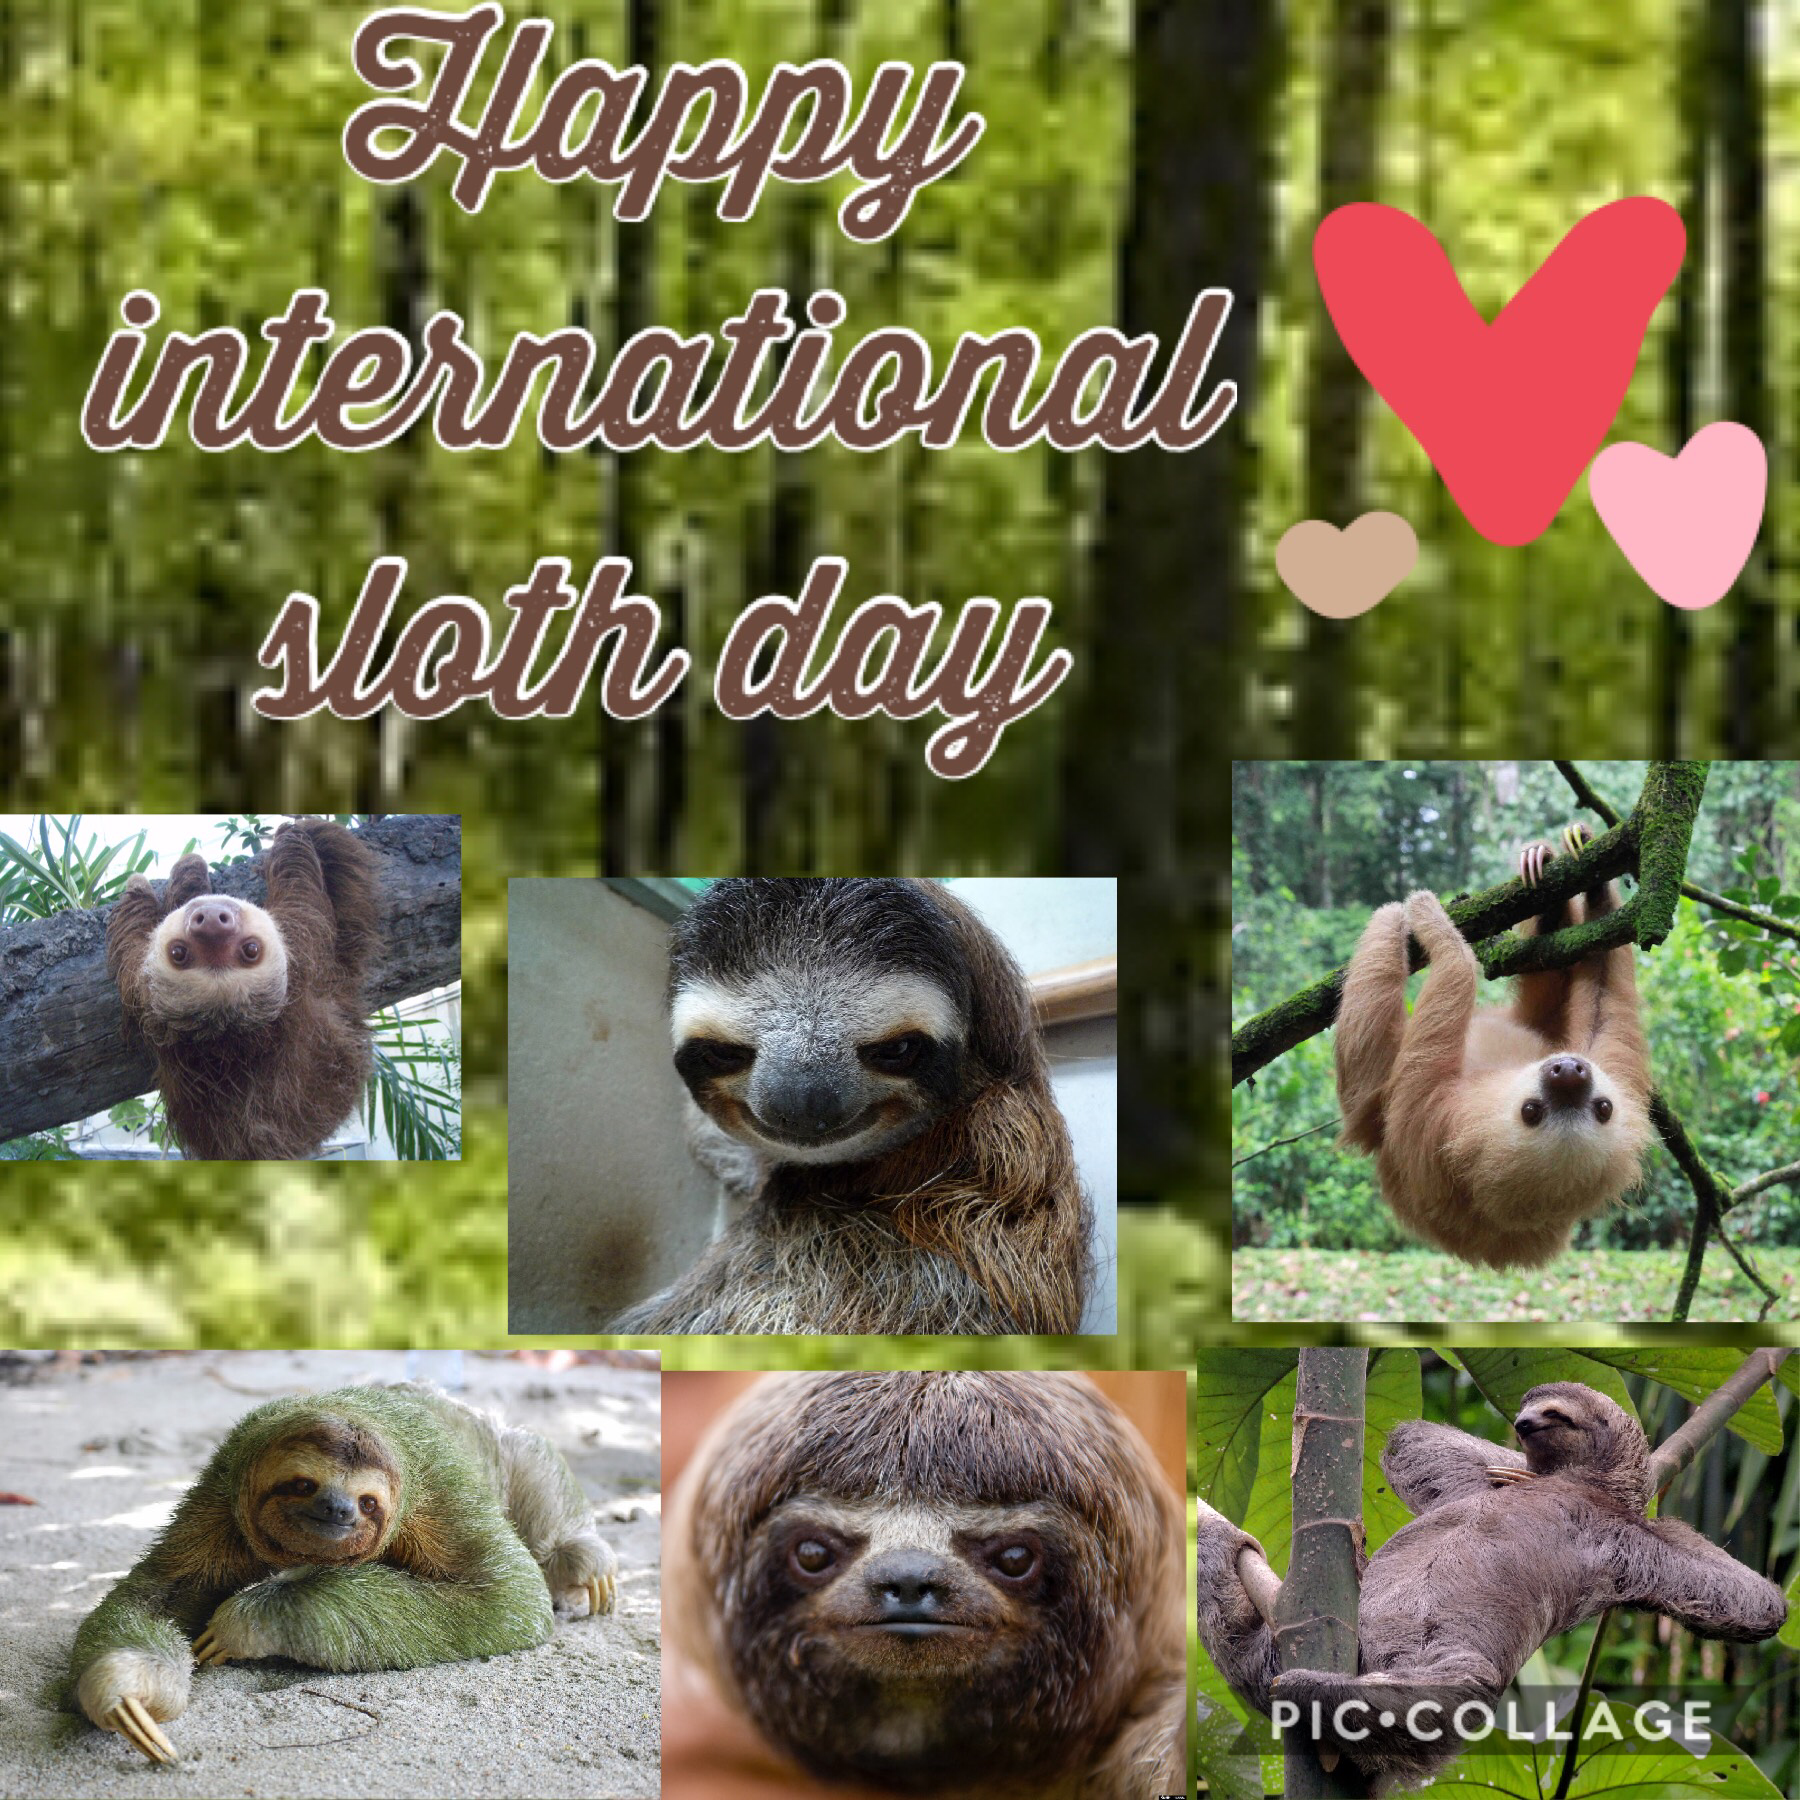 Happy international sloth day guys!